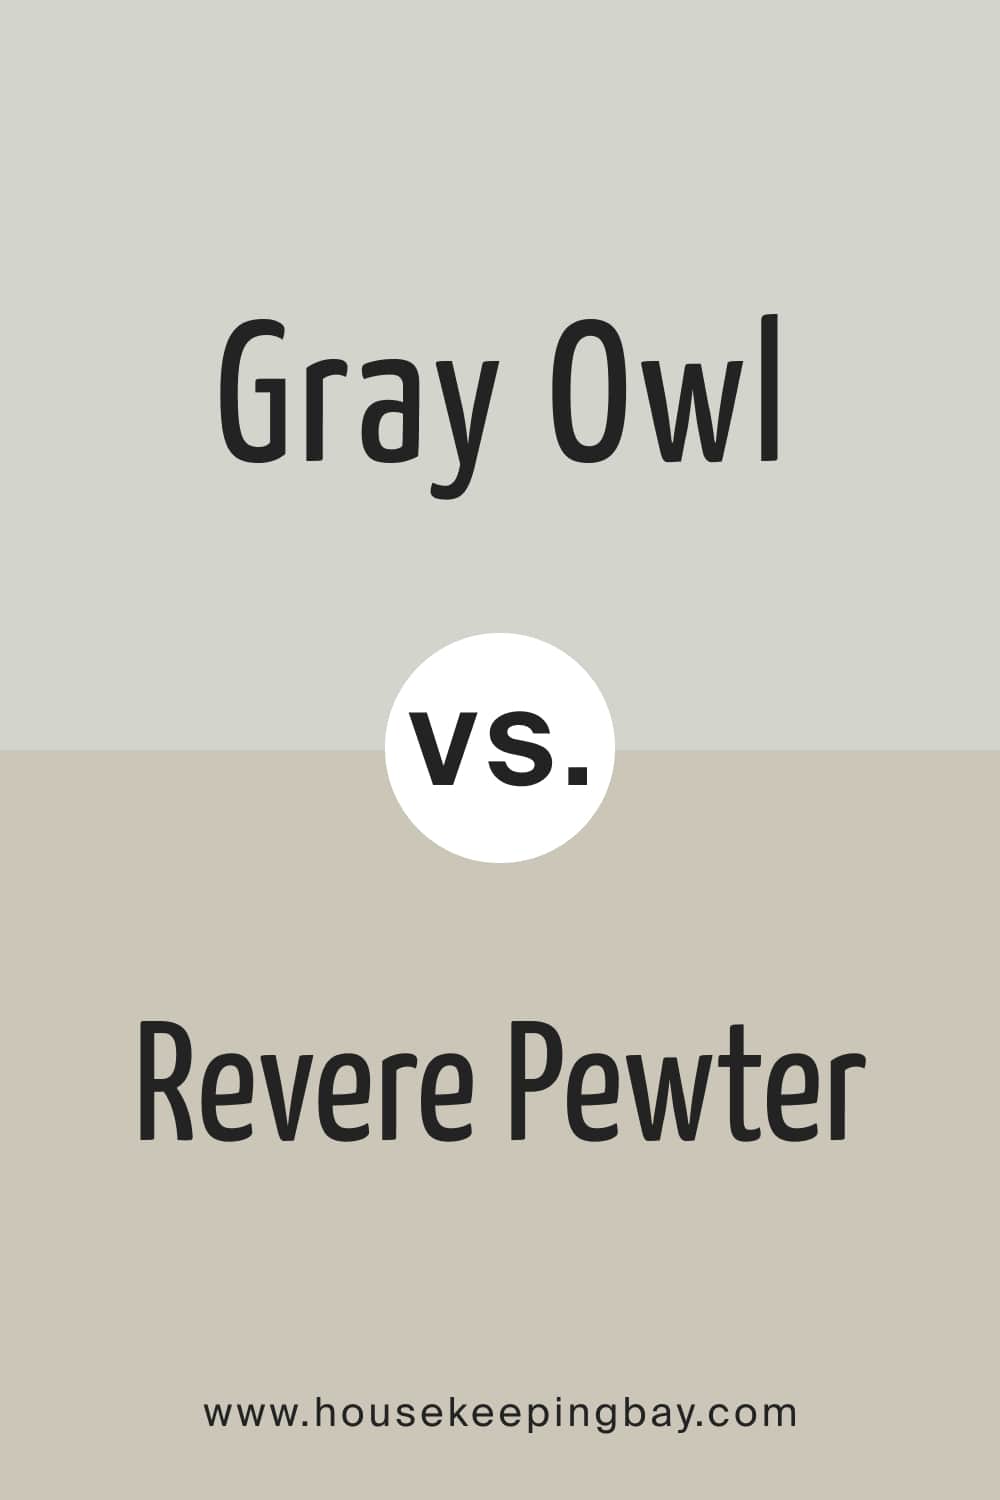 Gray Owl vs. Revere Pewter